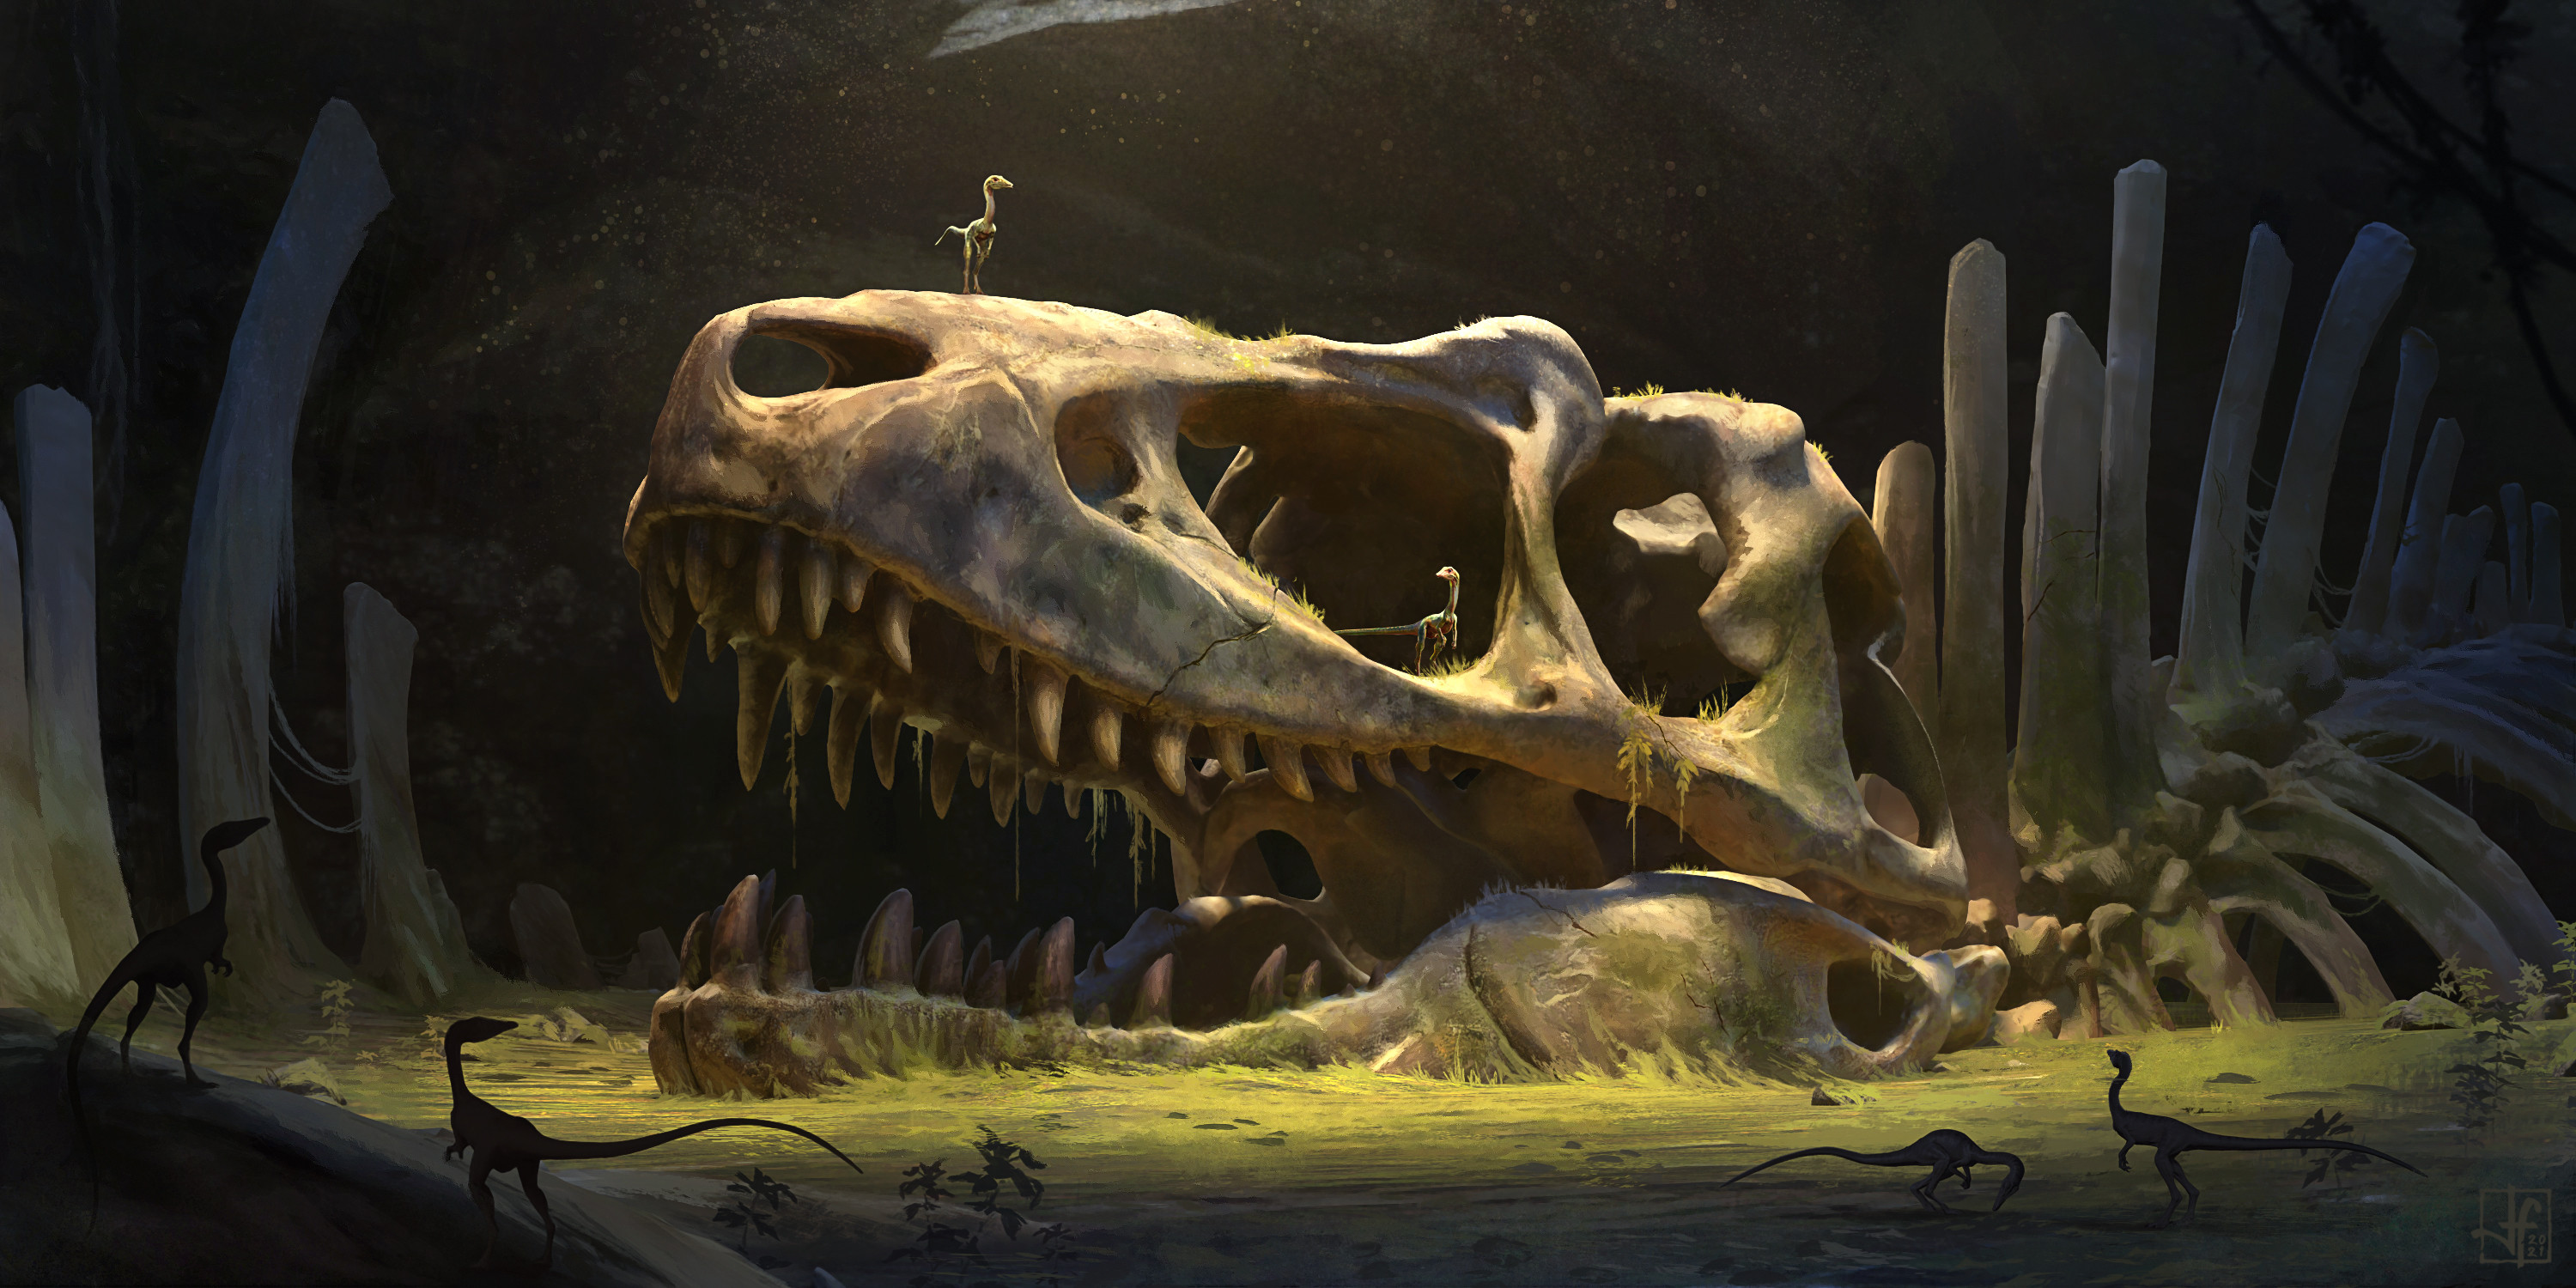 General 3000x1500 artwork digital art dinosaurs bones fossils skull raptor moss ancient